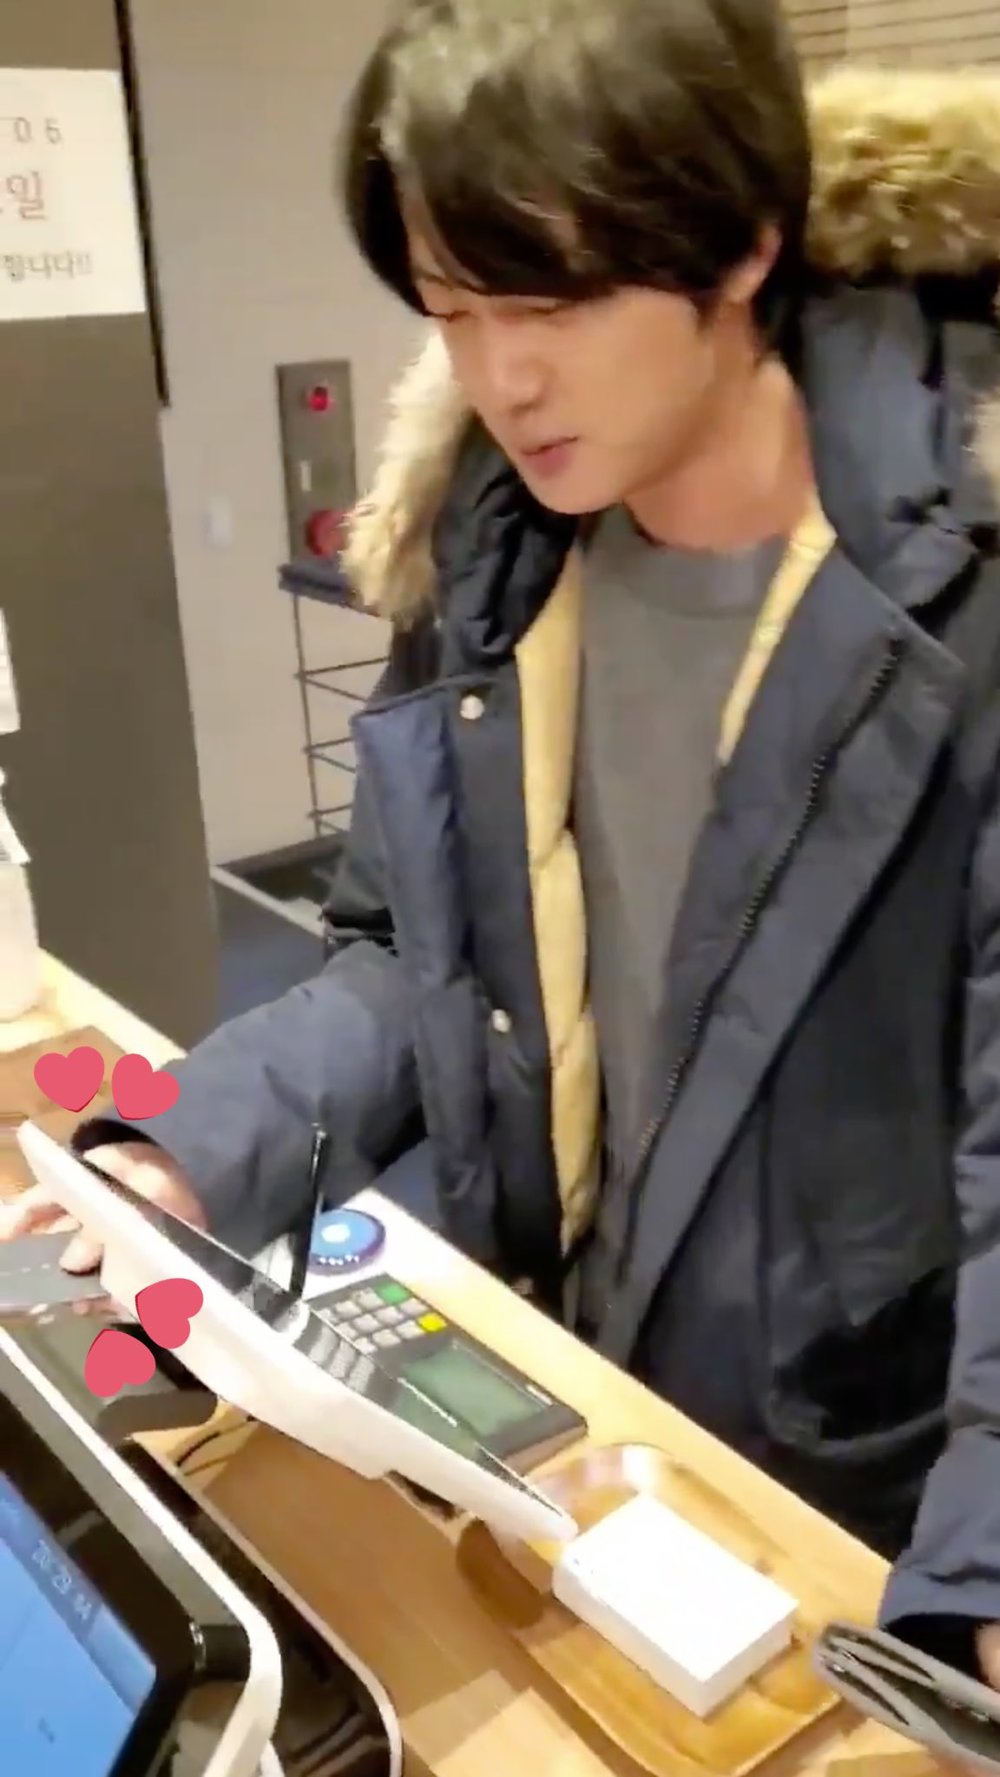  
Jin thường chi trả đồ ăn cho BTS bằng chiếc thẻ đen của mình. (Ảnh: Chụp màn hình)